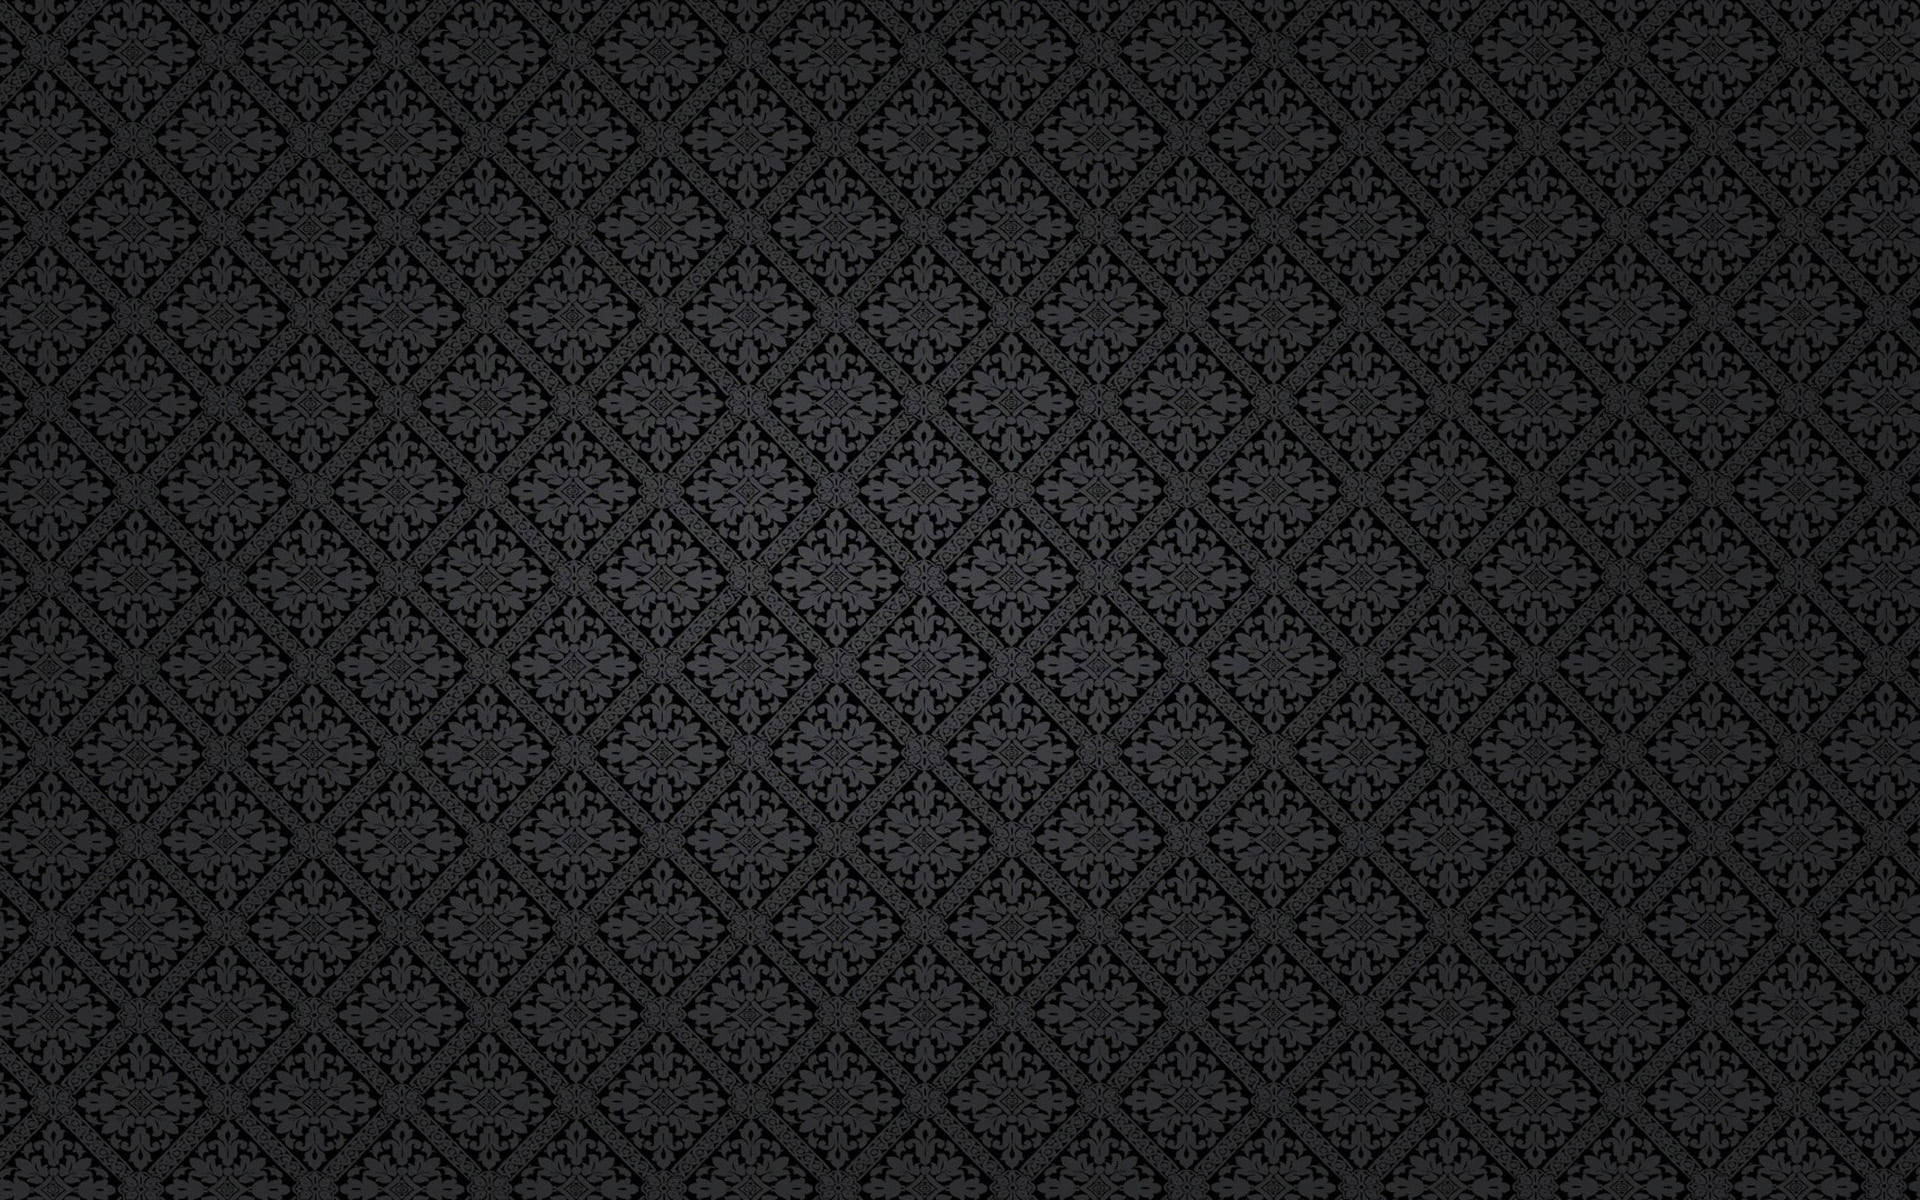 Dark Victorian Damask Black Pattern Background